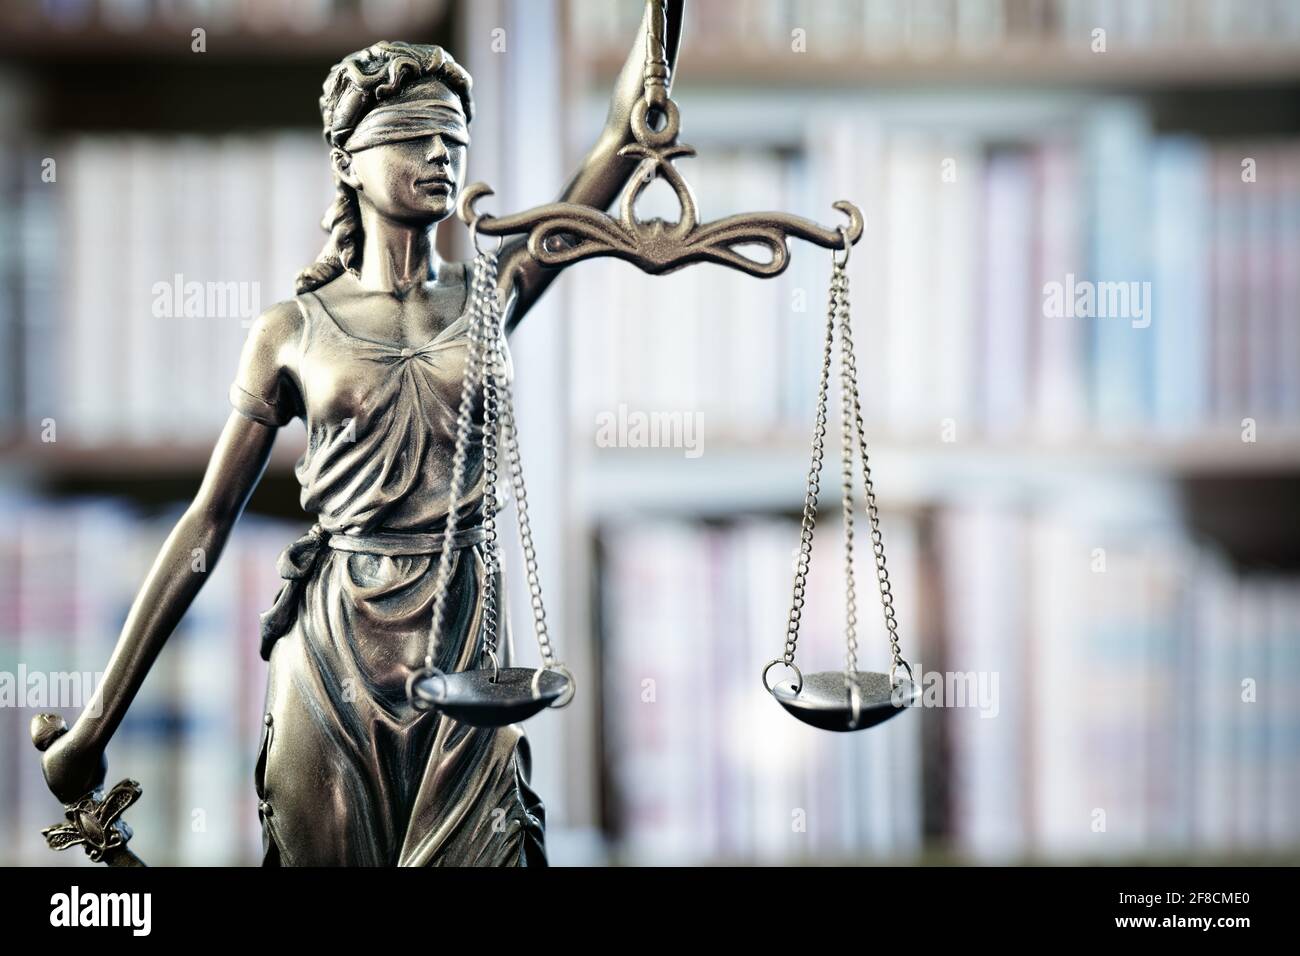 Estatua legal y legal de la escala de justicia de Lady Justice y libros de derecho en la estantería Foto de stock